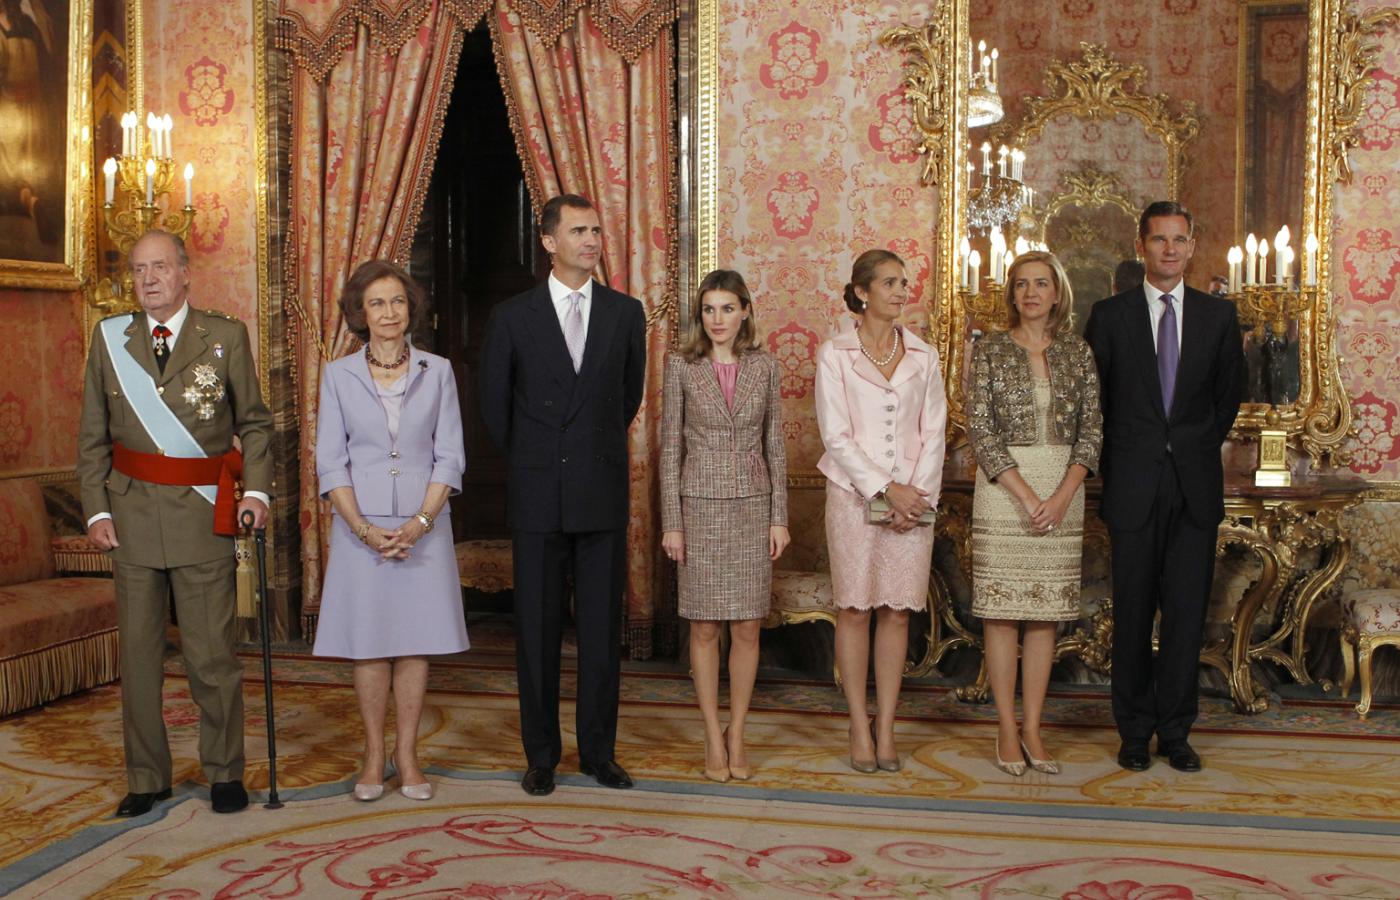 Hiszpańska rodzina królewska jeszcze przed skandalem, od lewej: król Juan Carlos, królowa Sofia, książę Filip, księżniczka Letizia, infantka Elena, infantka Cristina i jej mąż Iñaki Urdangarin.